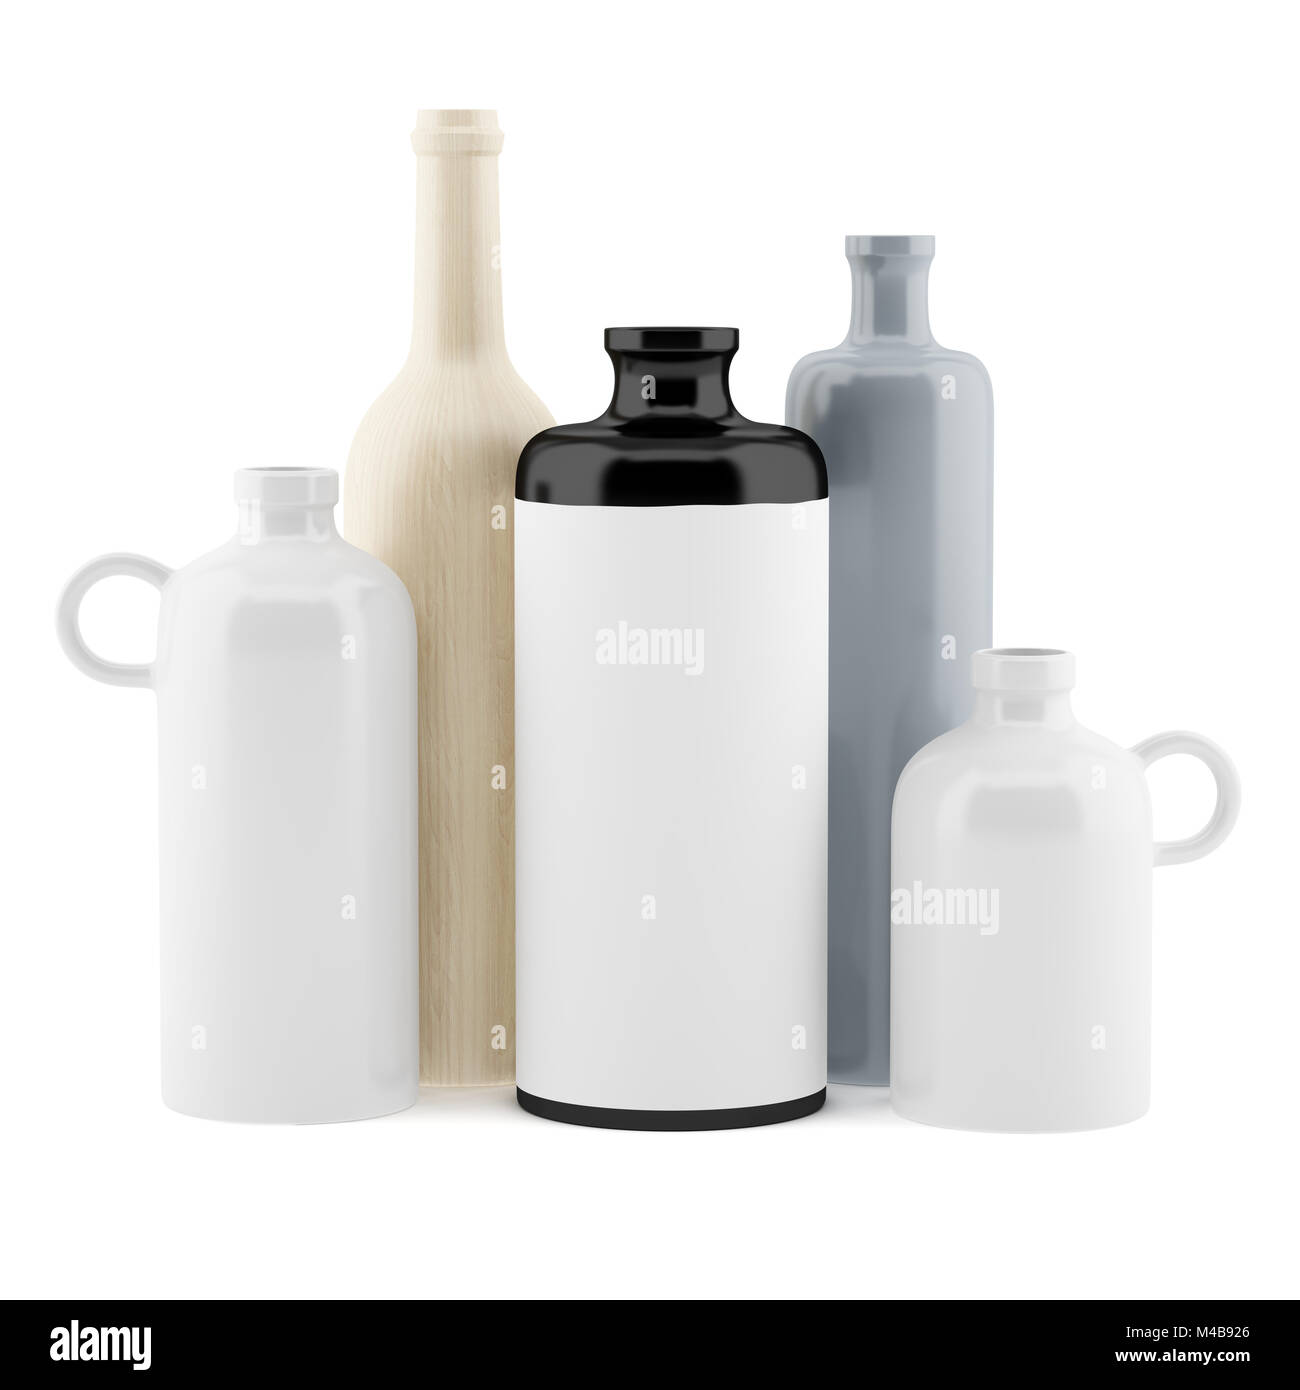 ceramic vases isolated on white background Stock Photo